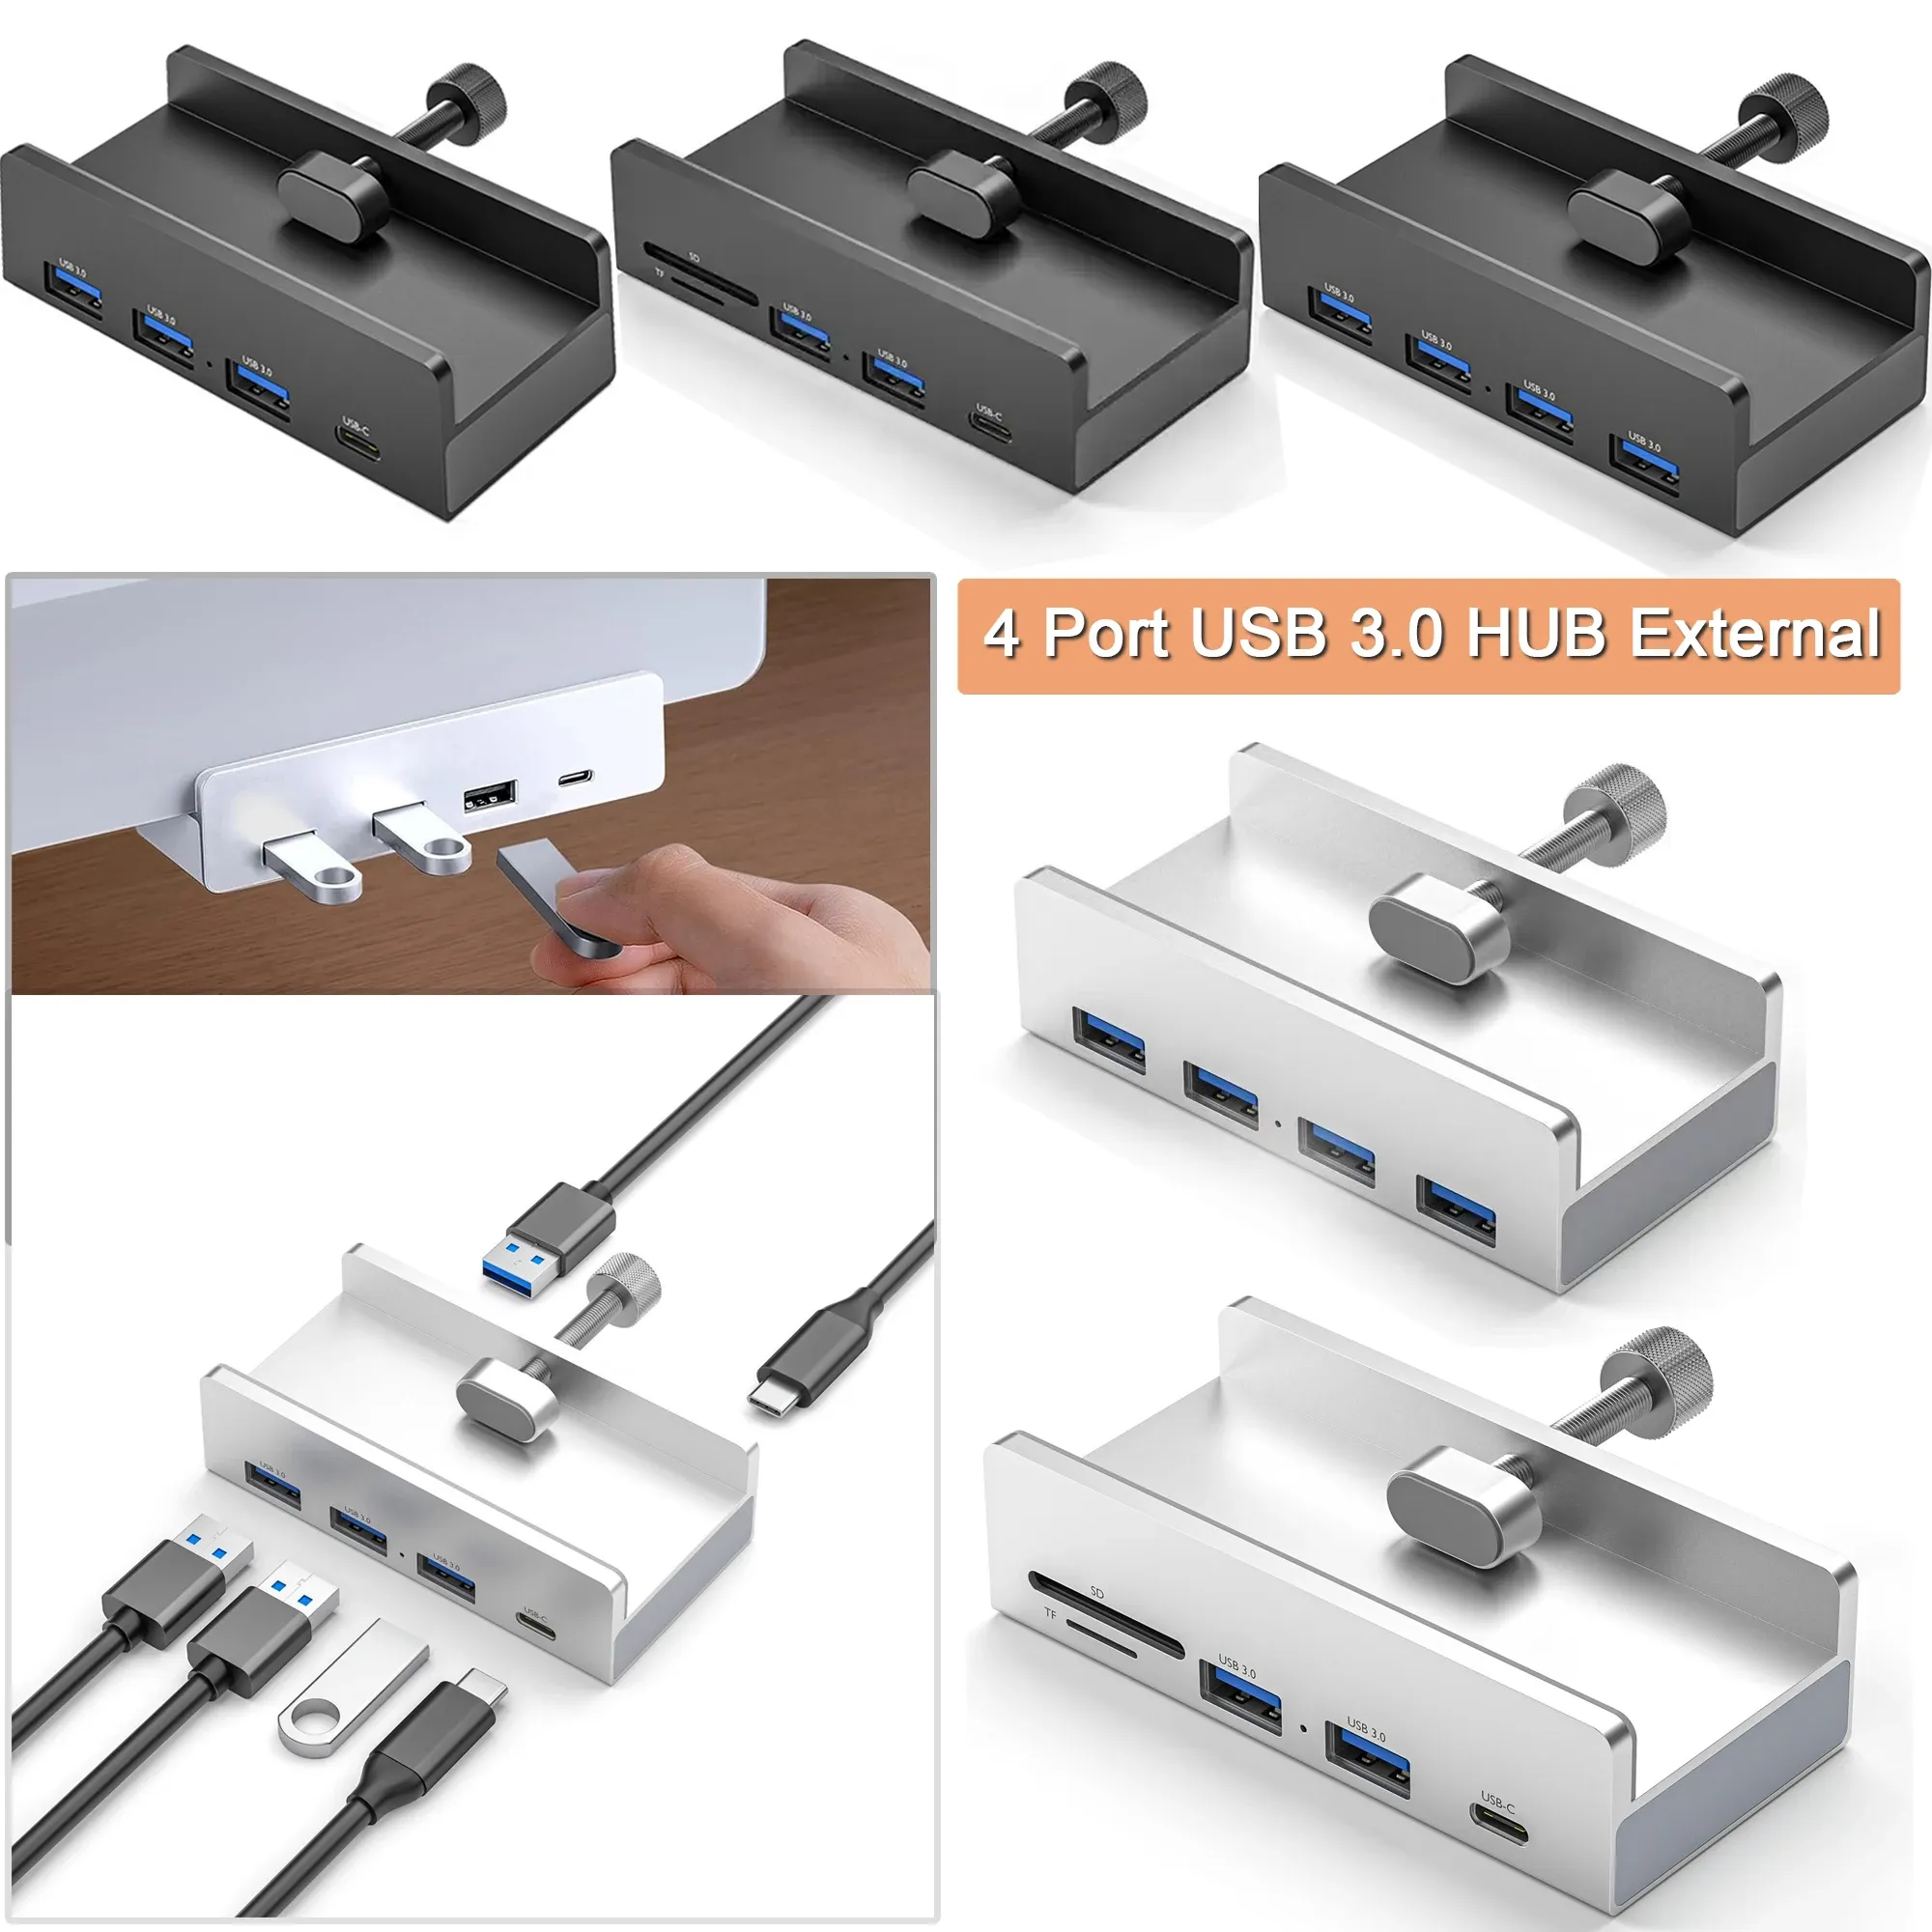 Nav klipptyp USB 3.0 navlegering extern multi 4 portar USB splitter adapter tf kort slot nav expansion dock station för tabell pc